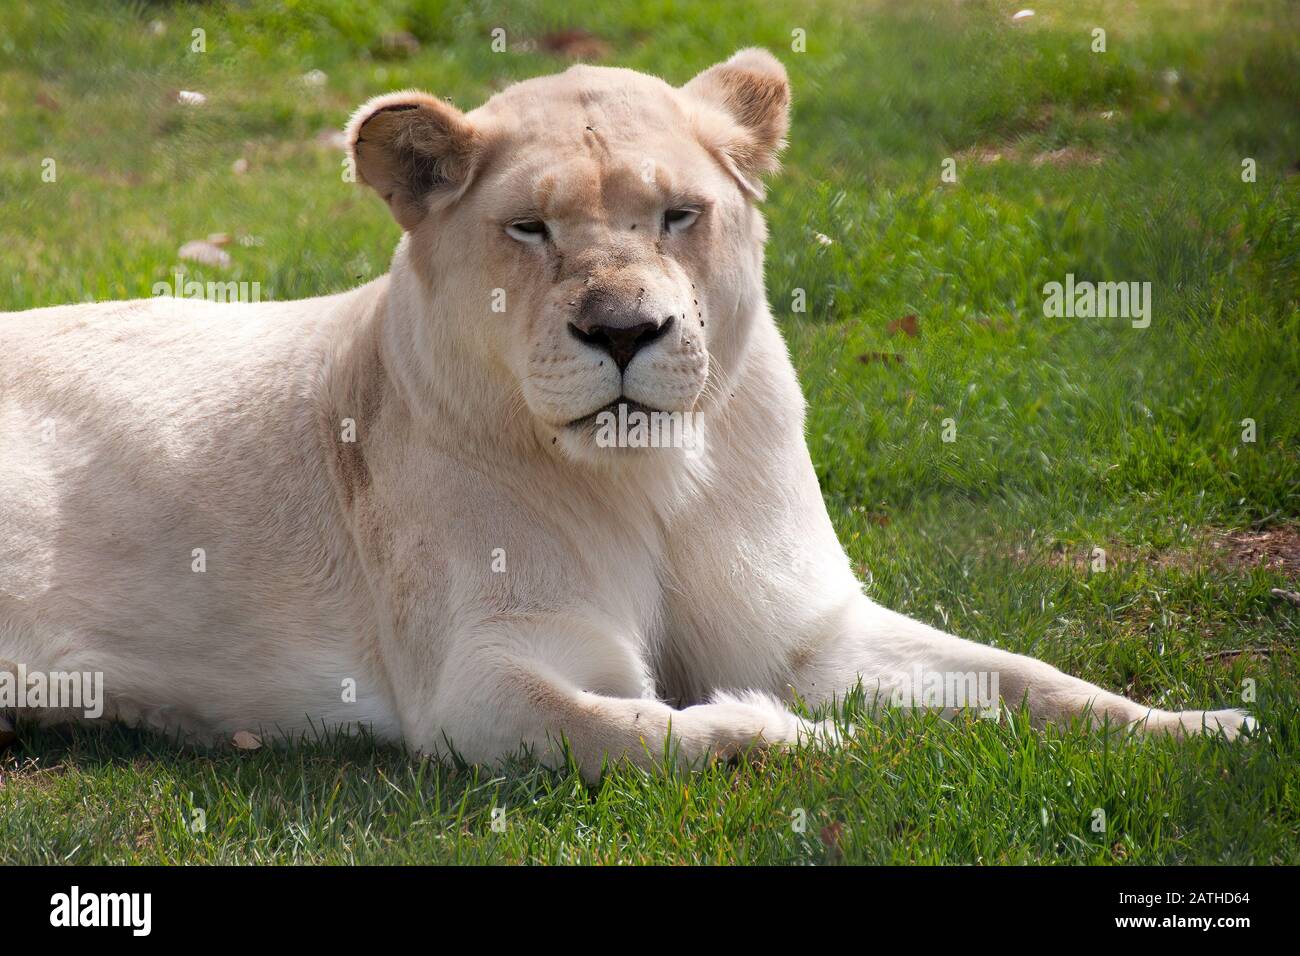 Mogo Australia,  white lioness resting on grass Stock Photo